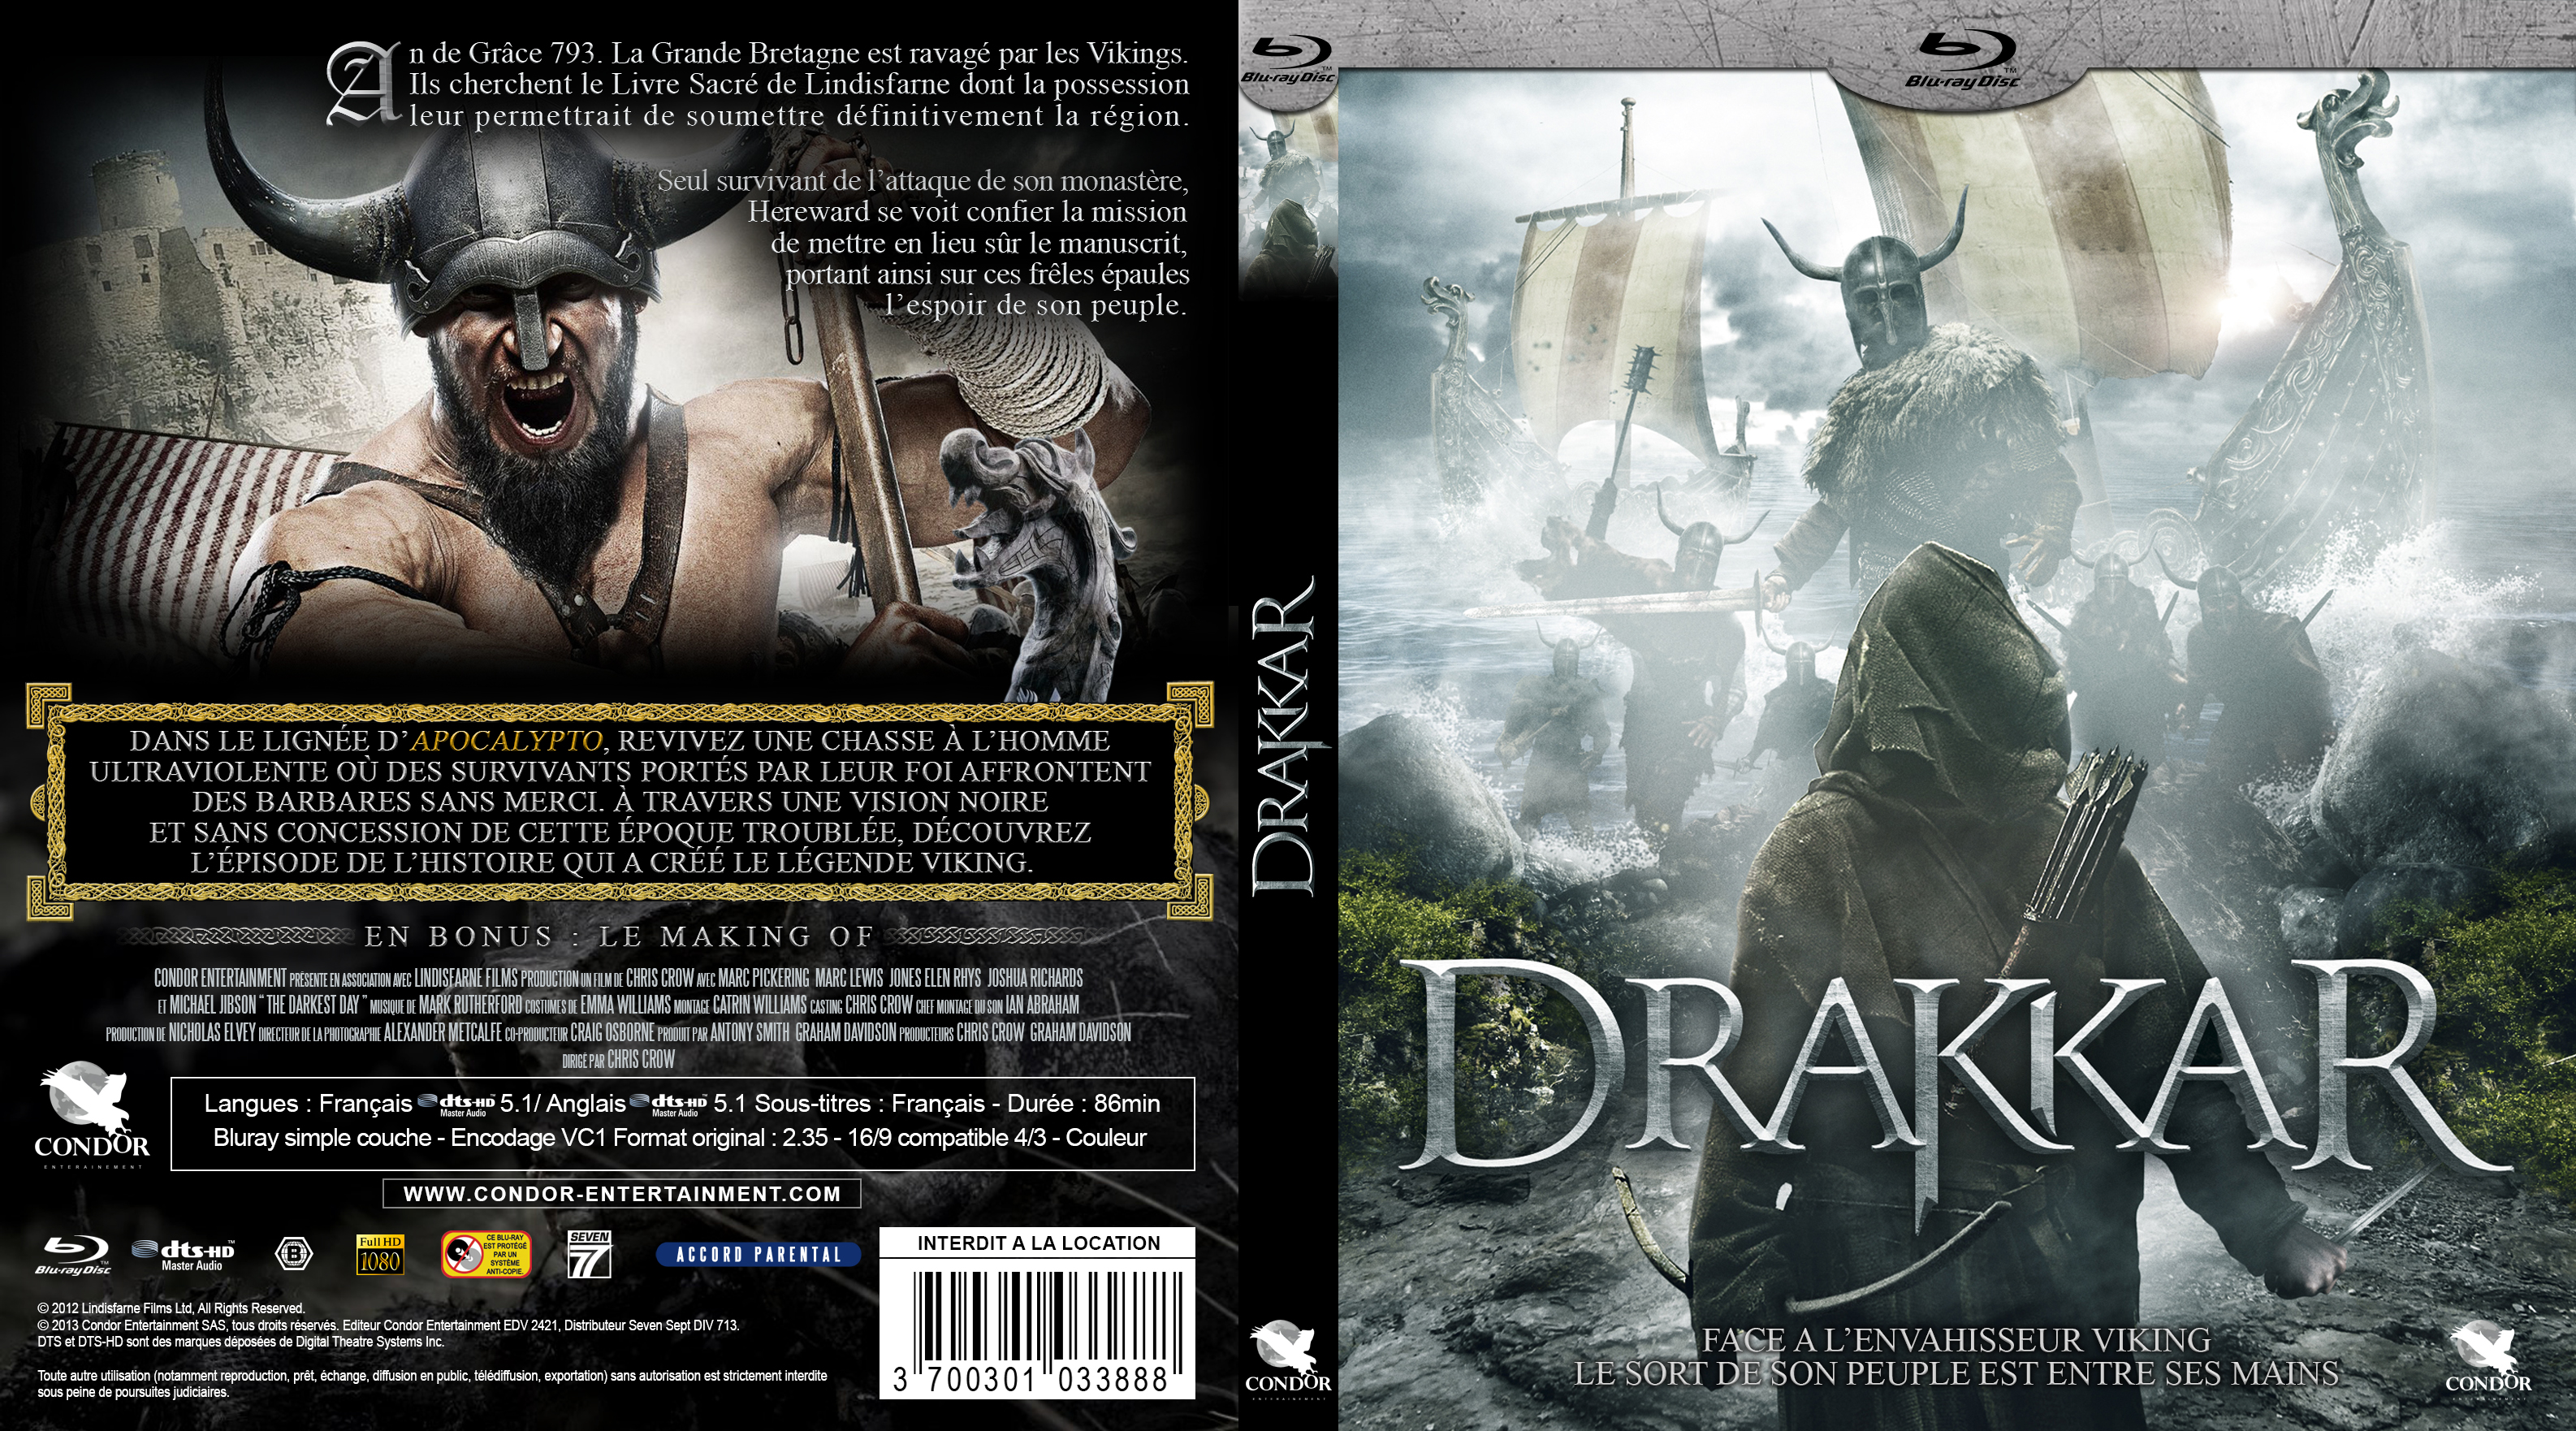 Jaquette DVD Drakkar custom (BLU-RAY)